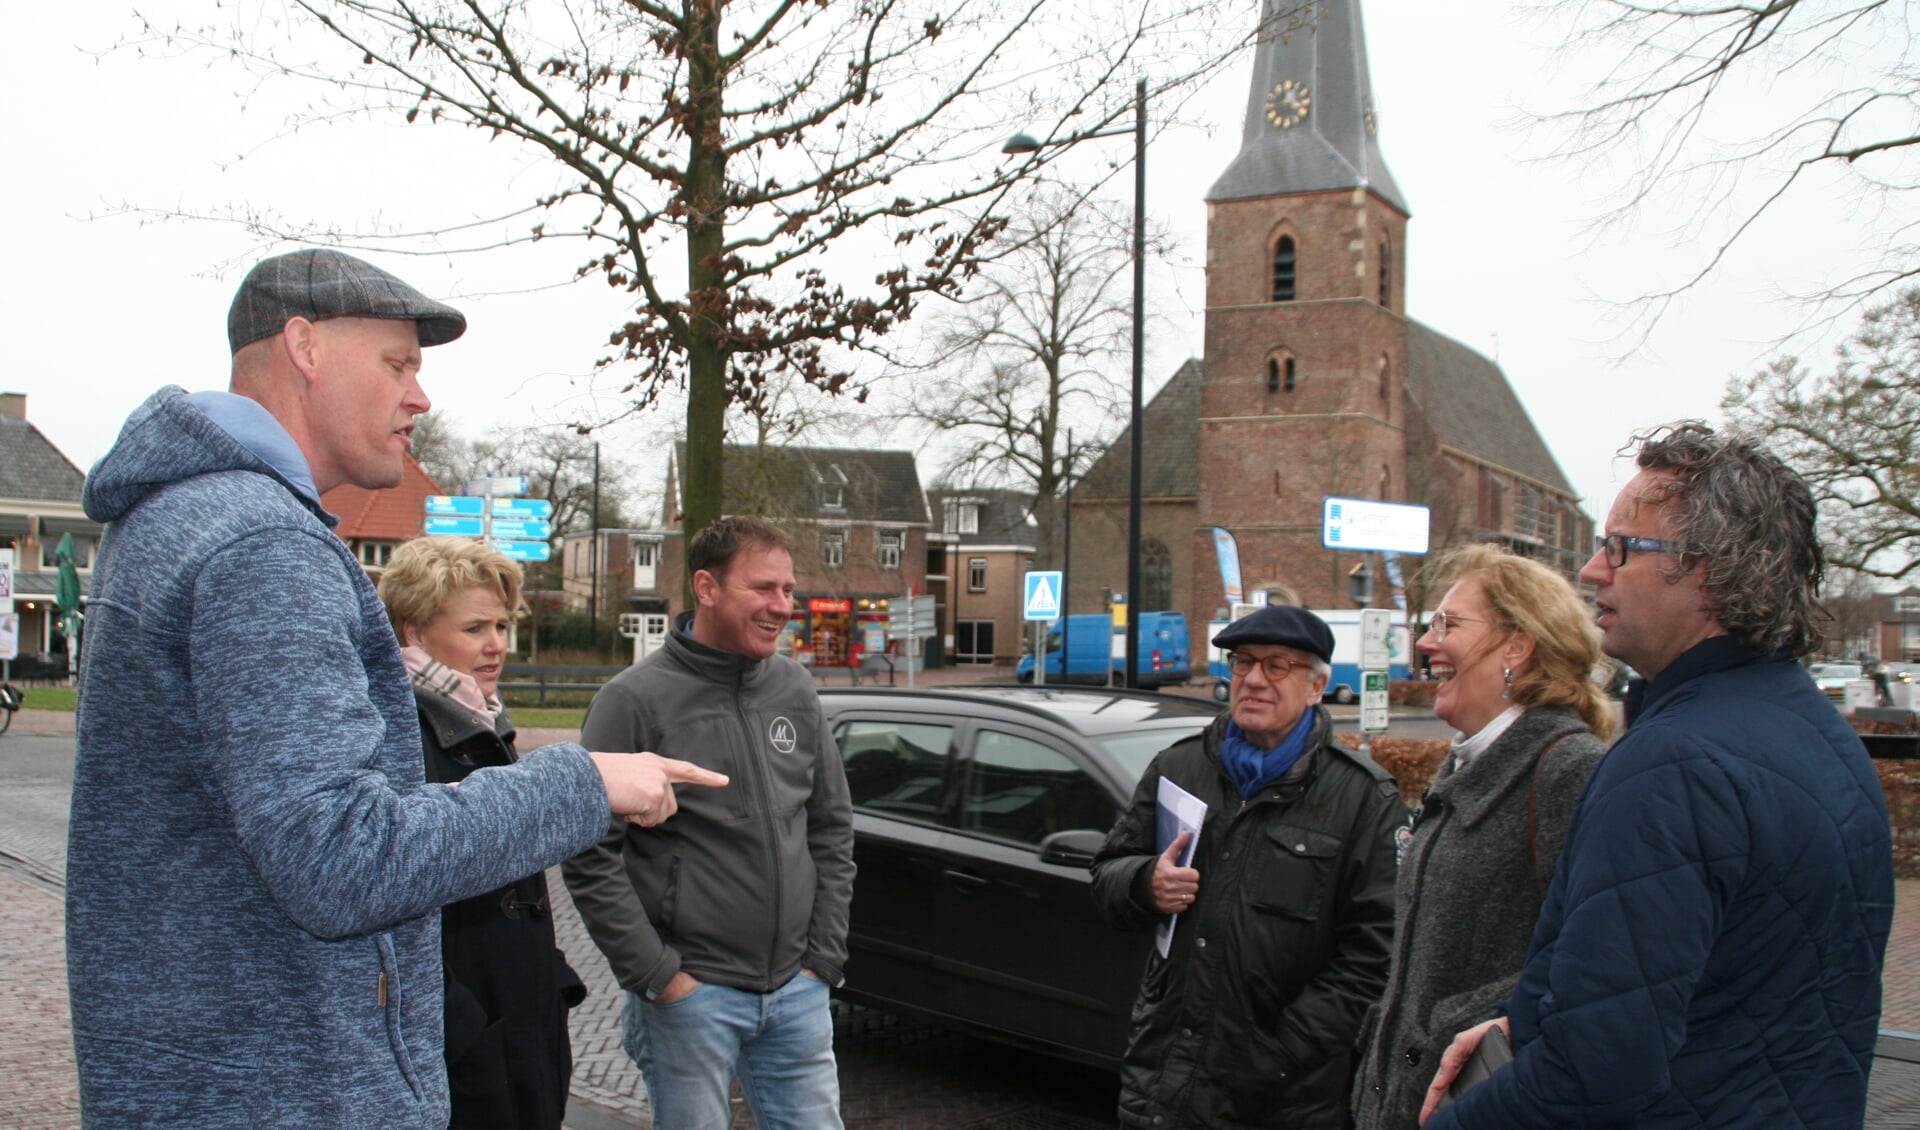 Een delegatie van Vitale Kern en VOV heeft samen met twee ambtenaren van de gemeente een rondgang gemaakt door het dorp om verkeersknelpunten en verbeterpunten in kaart te brengen. Foto: PR